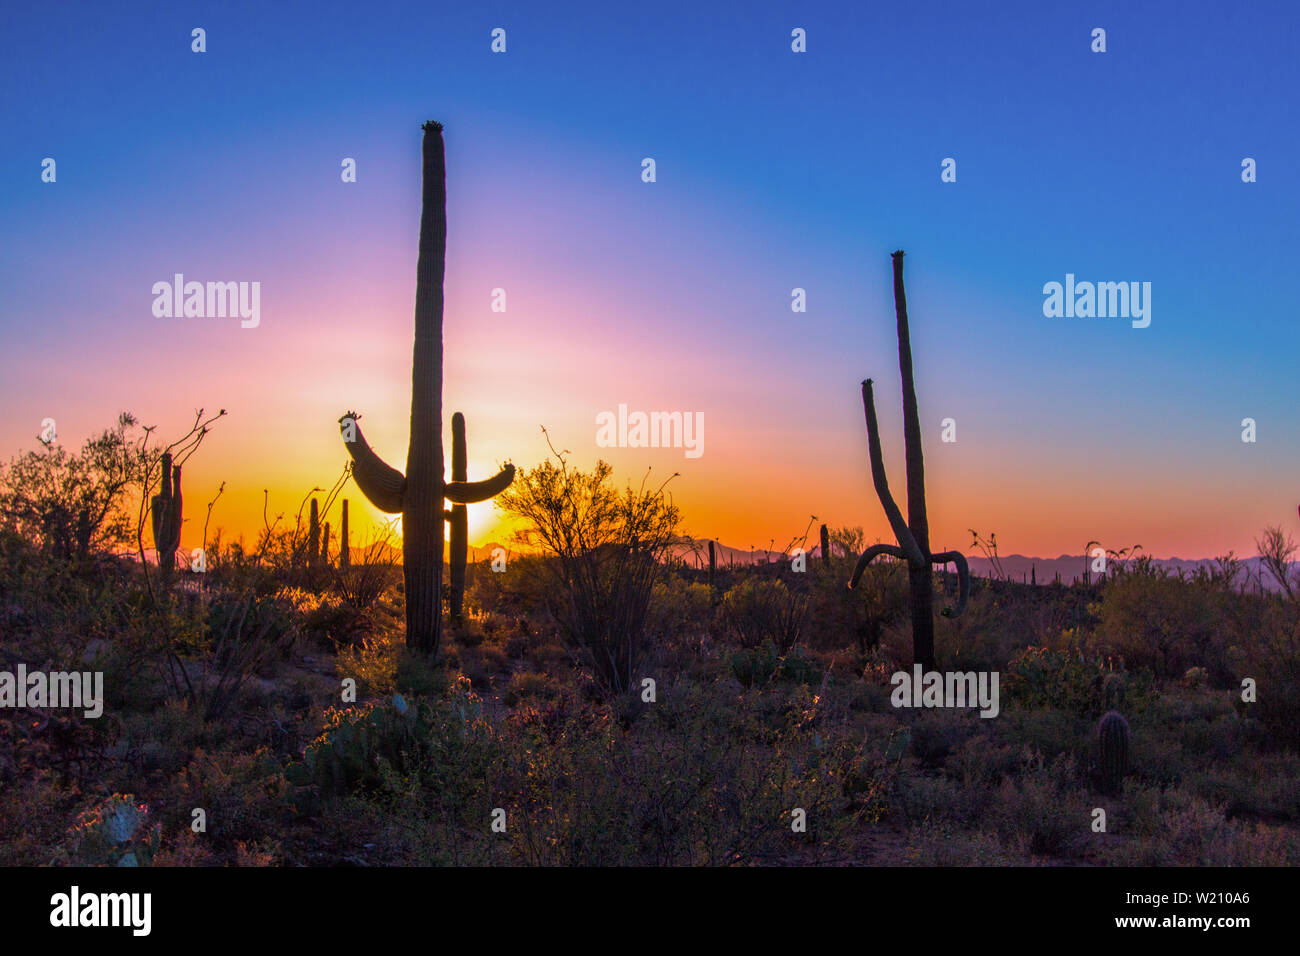 Coucher de soleil sur Saguaro Cactus. Rare grand cactus Saguaro dans le désert de Sonora au coucher du soleil dans le parc national de Saguaro. Tucson, Arizona, États-Unis. Banque D'Images